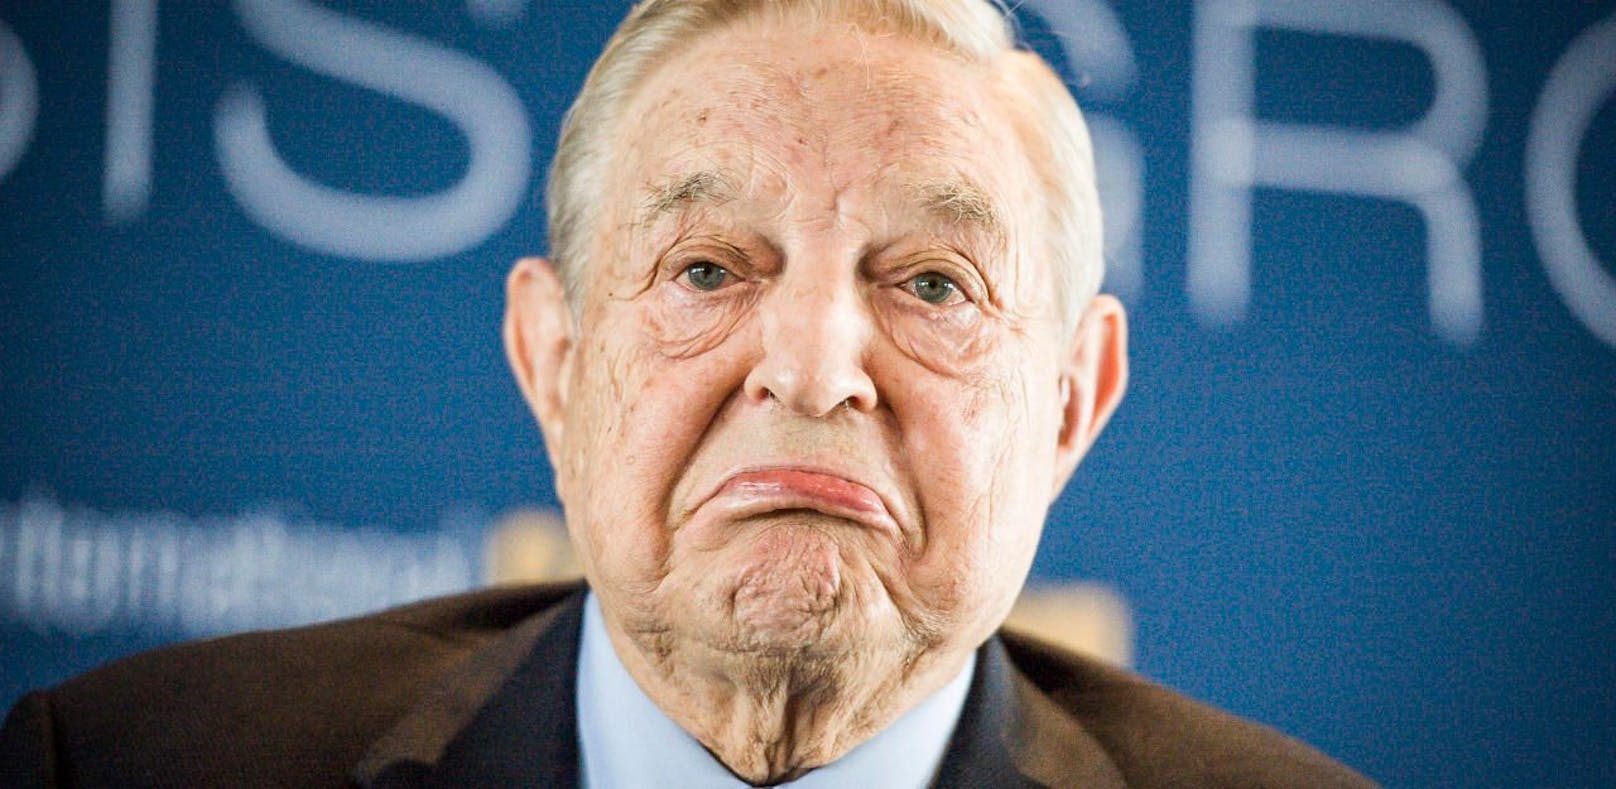 Milliardär George Soros verzockt sich an der Börse